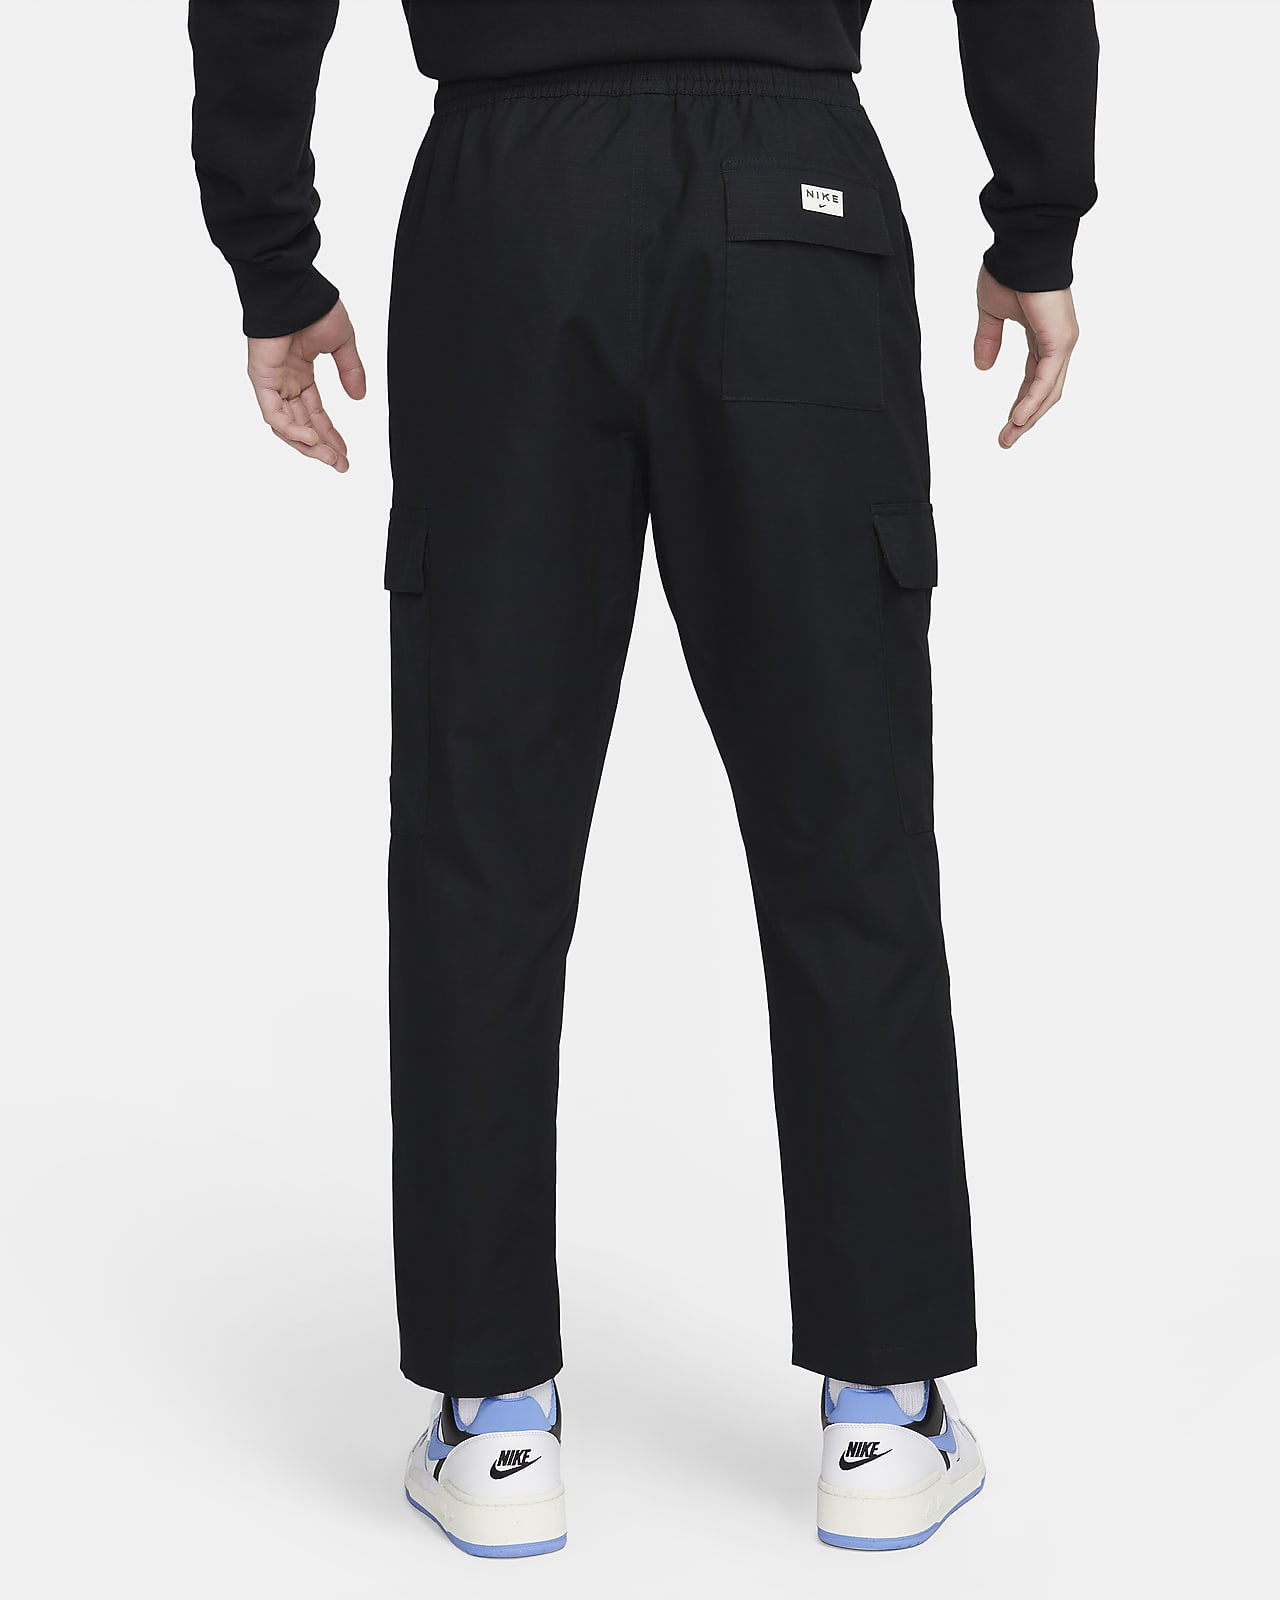 Nike Mens Sportswear Tech Pack Unlined Woven Cargo Pants DM5538 010 XL  Black | eBay